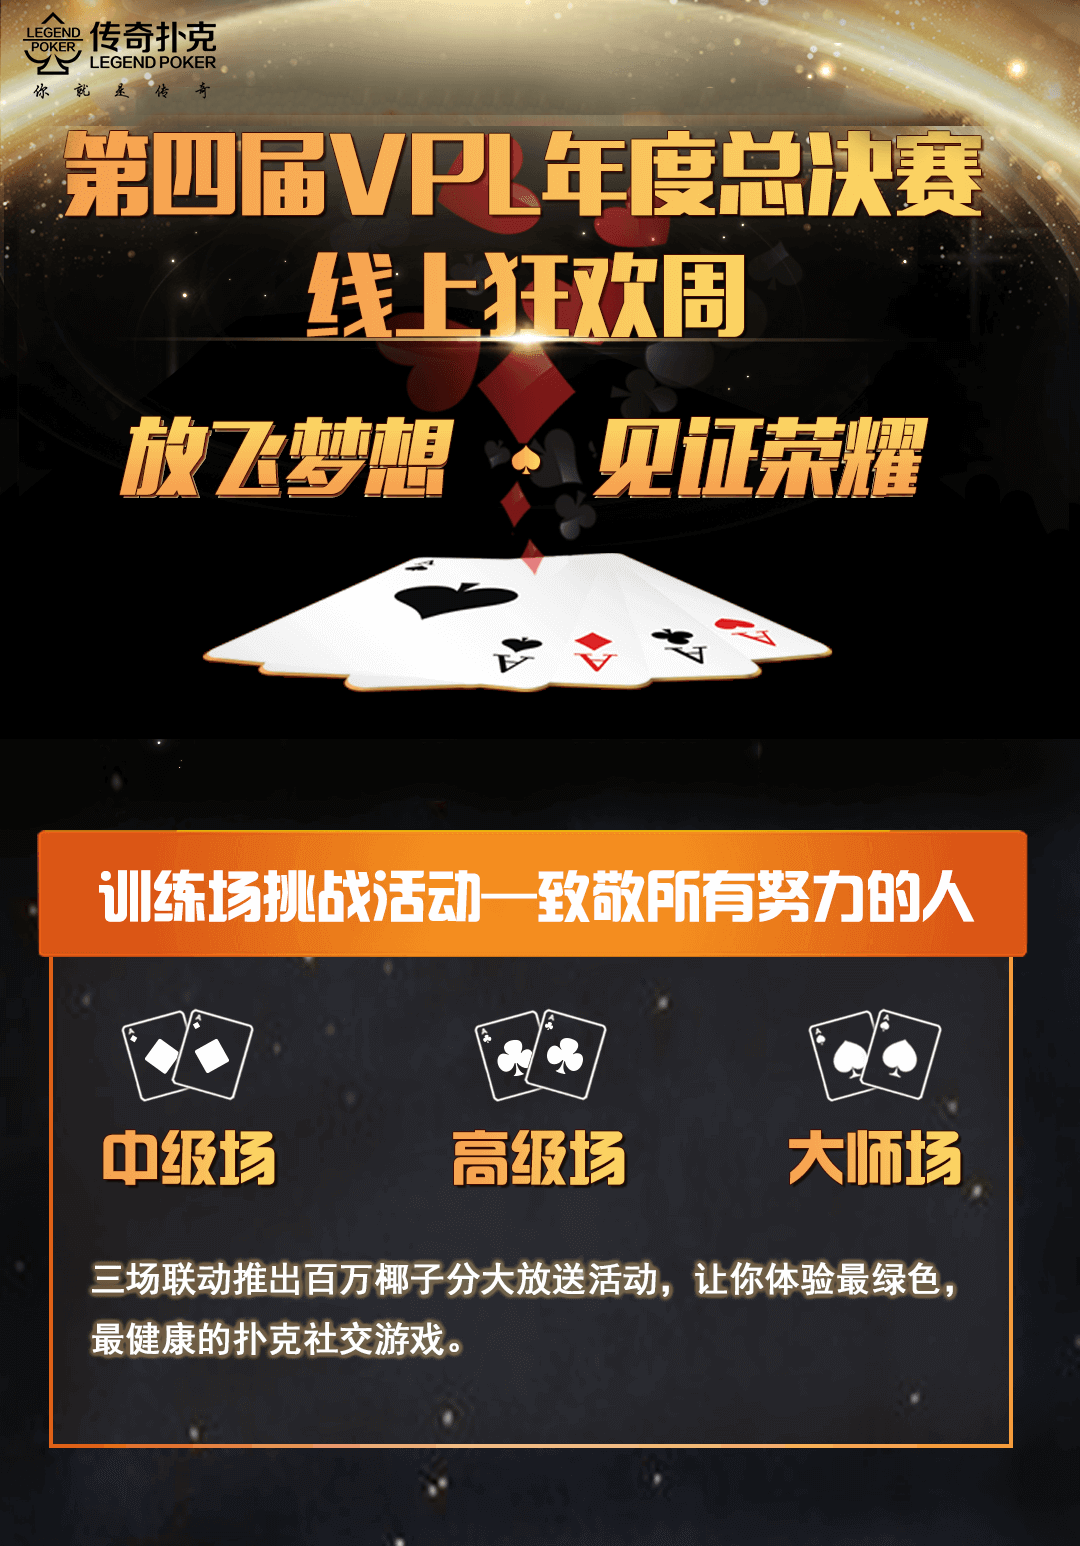 扑克棋牌手游APP下载游戏战队